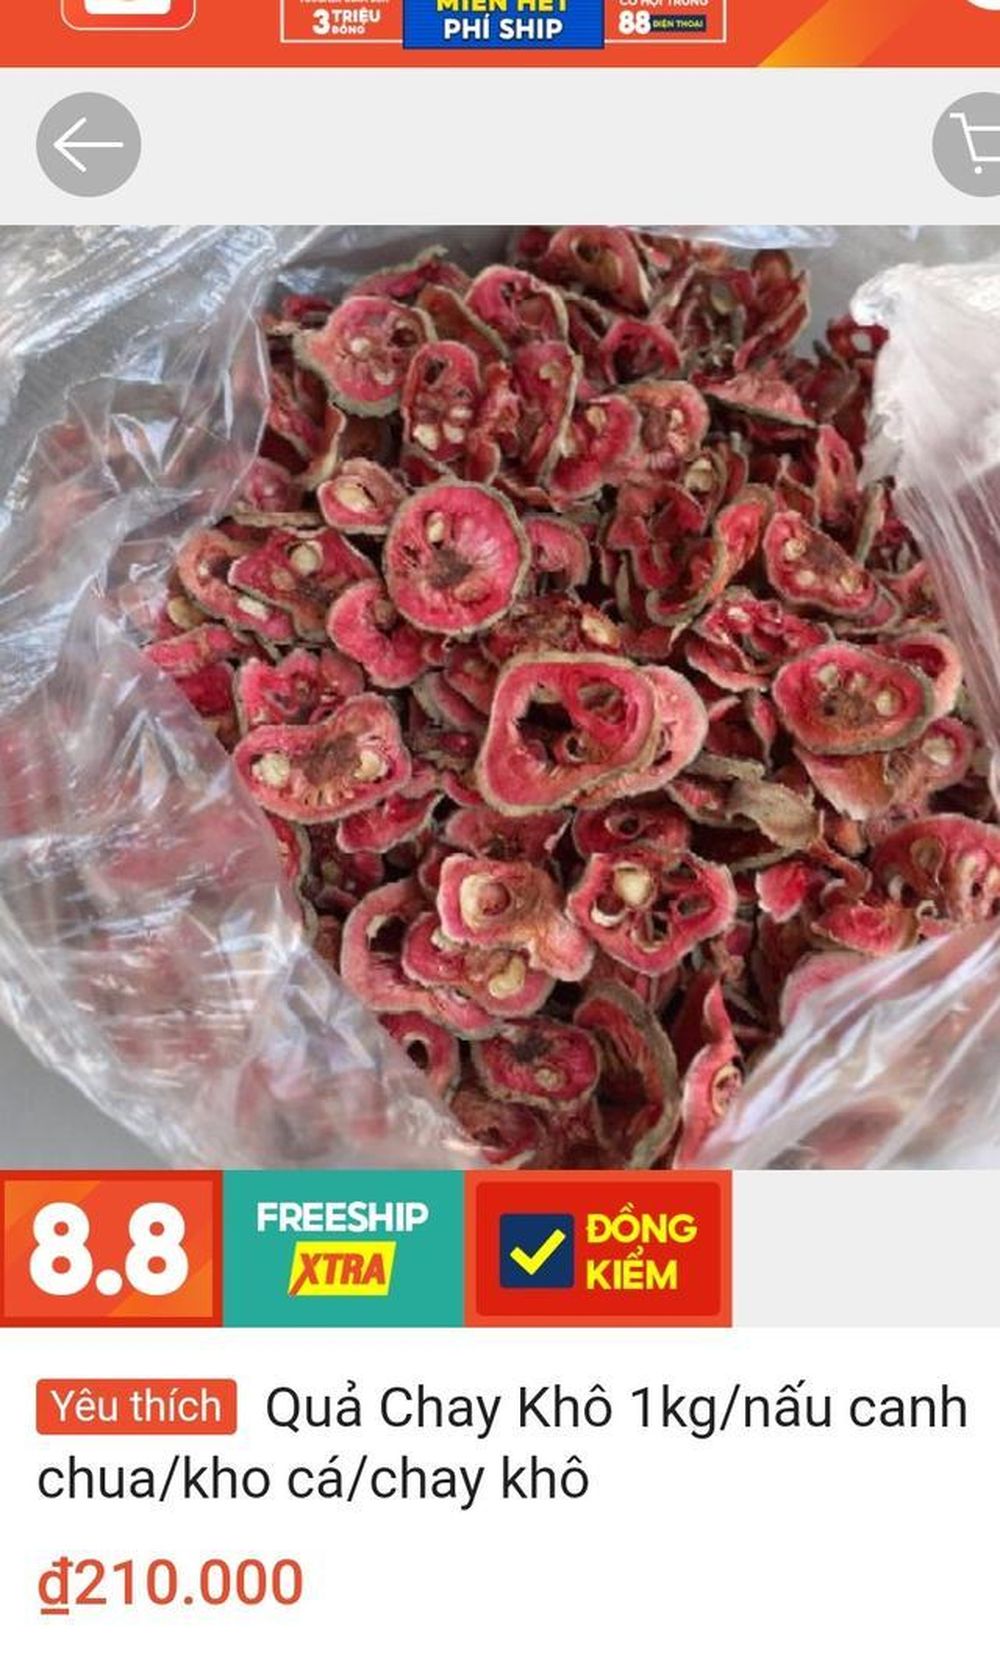 Một loại quả vị chua chua, ruột hồng bắt mắt giá ngang trái cây nhập khẩu ở Hà Nội mà vẫn đắt khách - Ảnh 3.